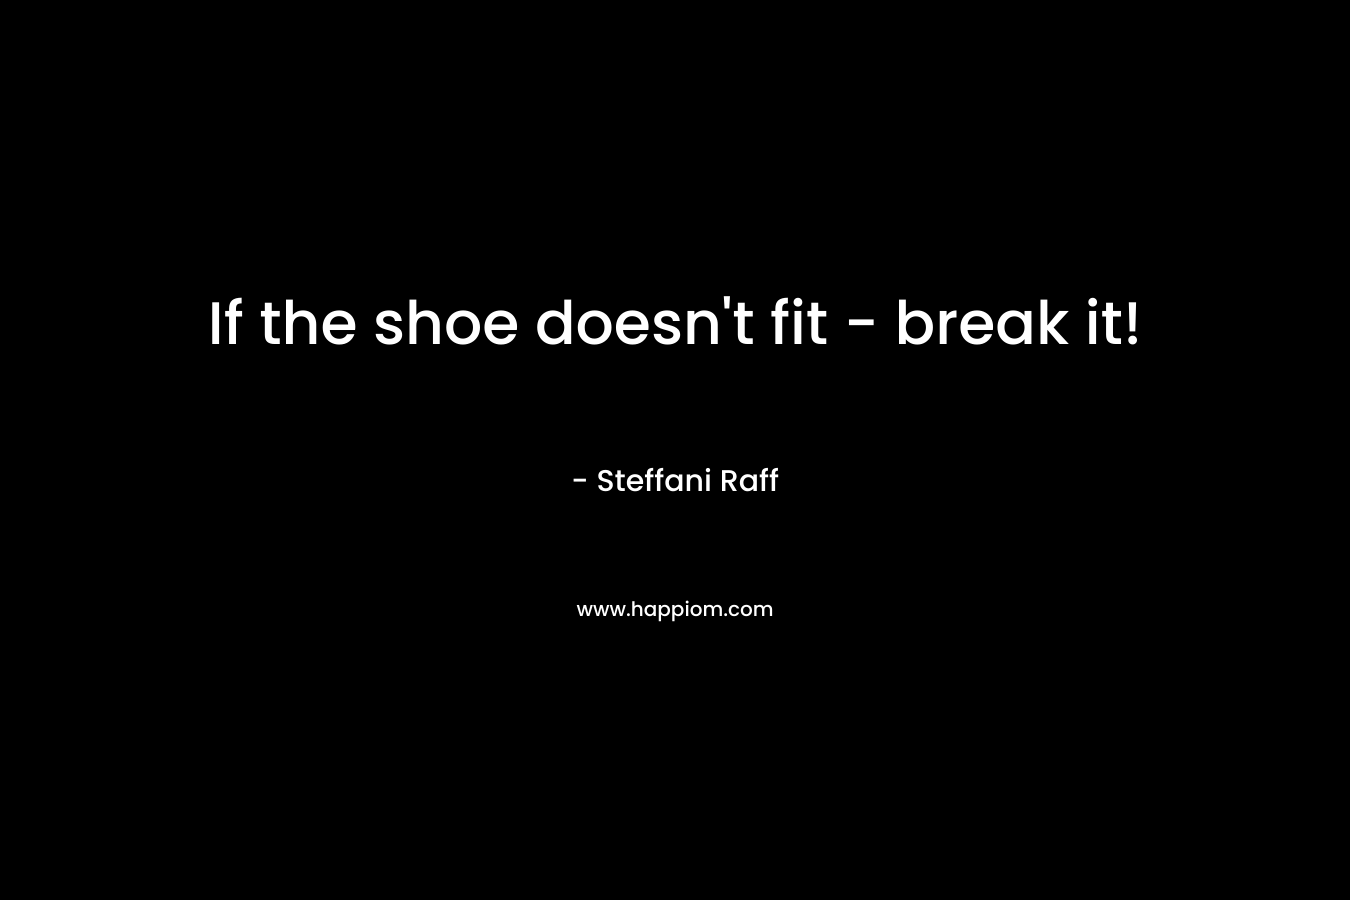 If the shoe doesn't fit - break it!